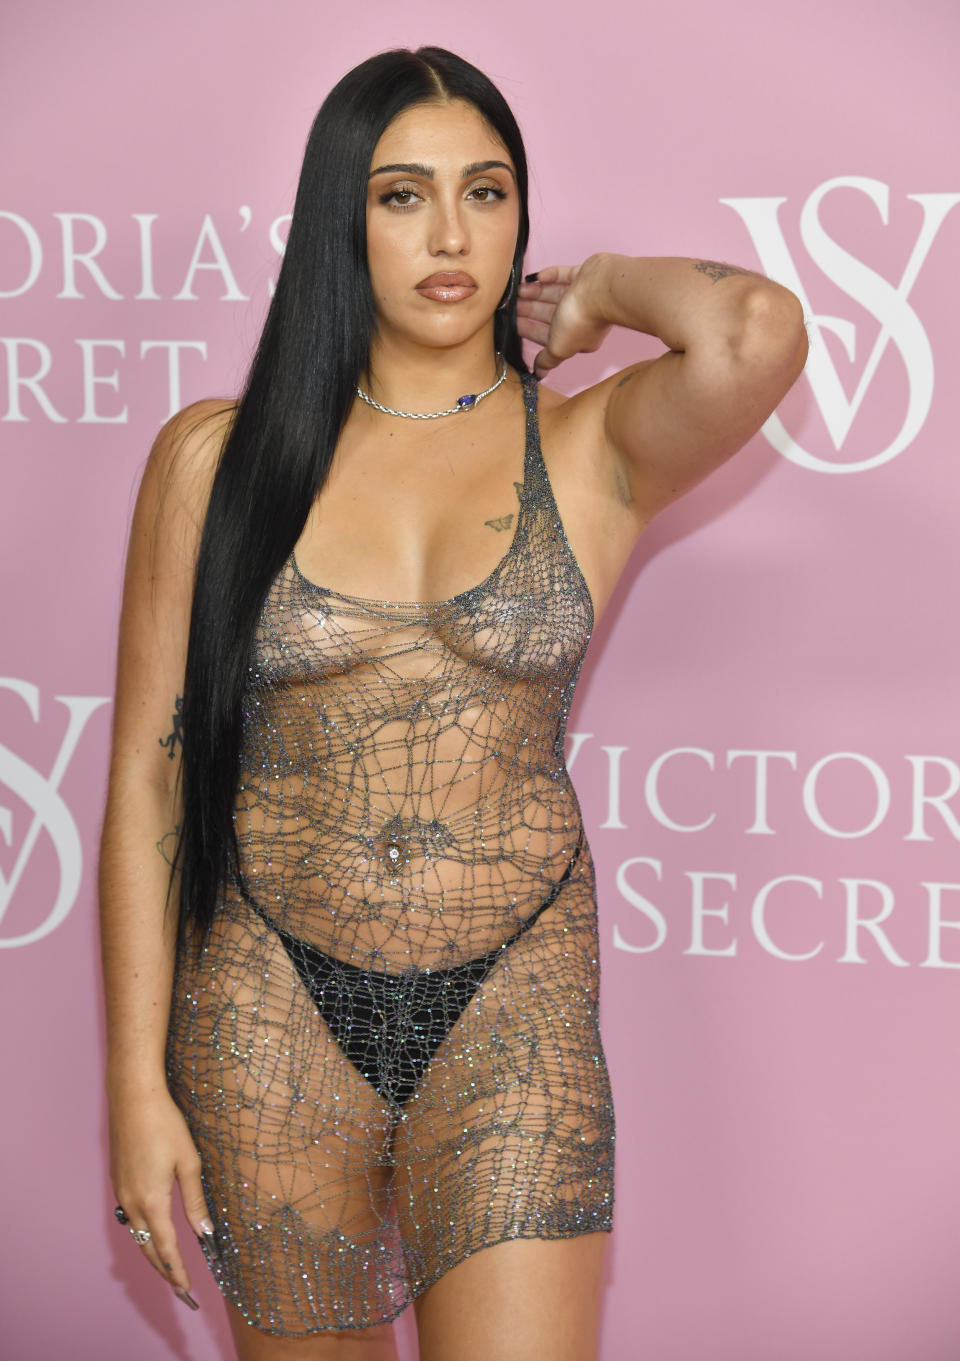 Lourdes Leon attends the Victoria's Secret 